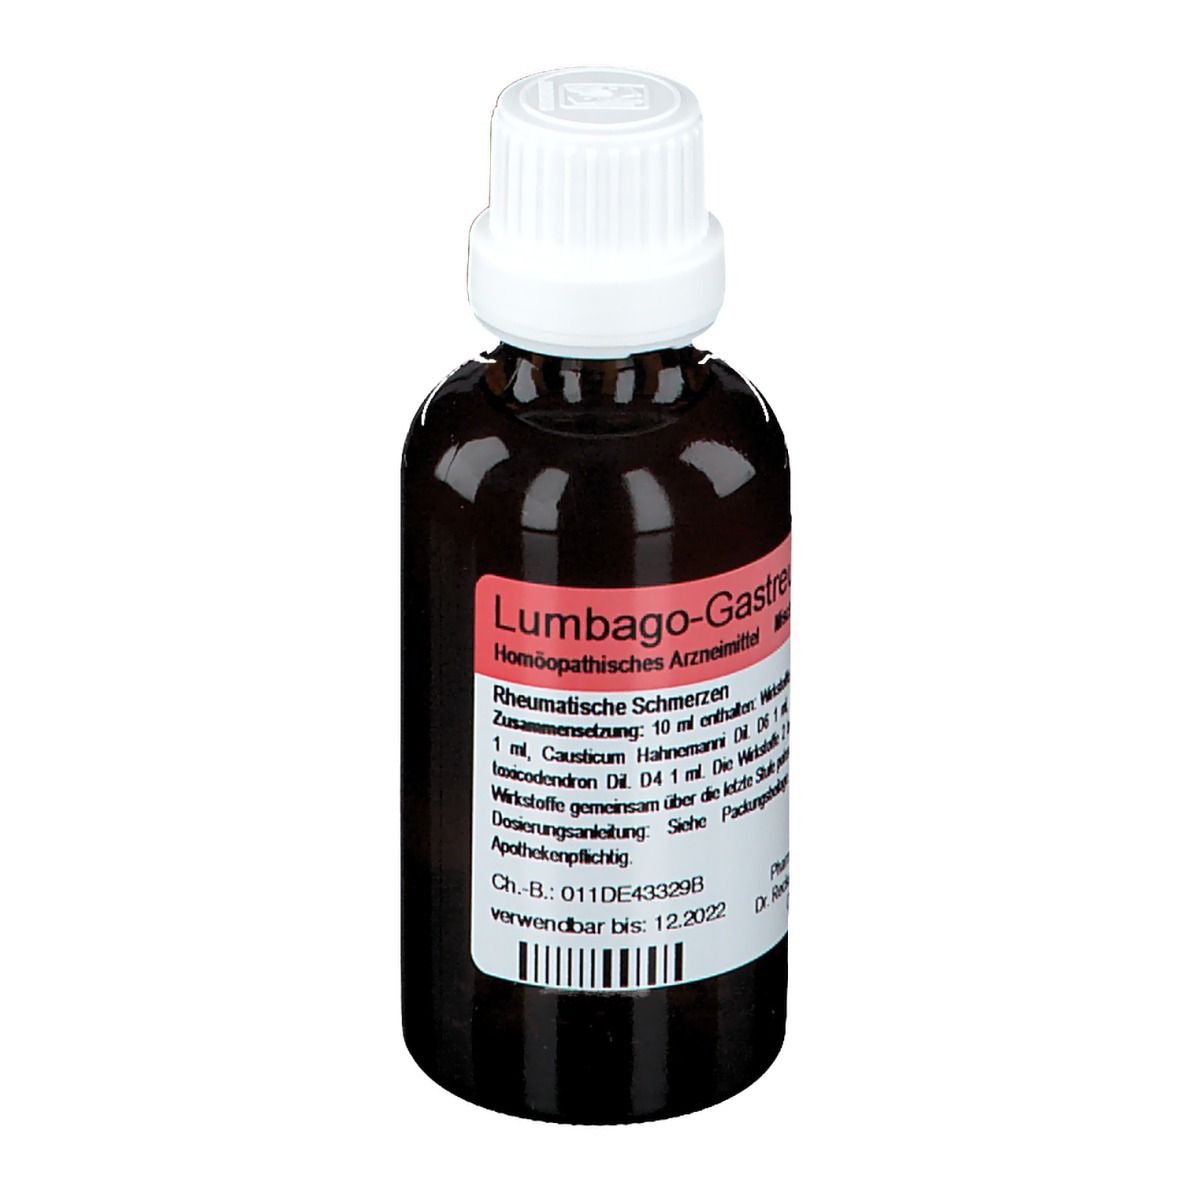 Lumbago-Gastreu® S R11 Tropfen